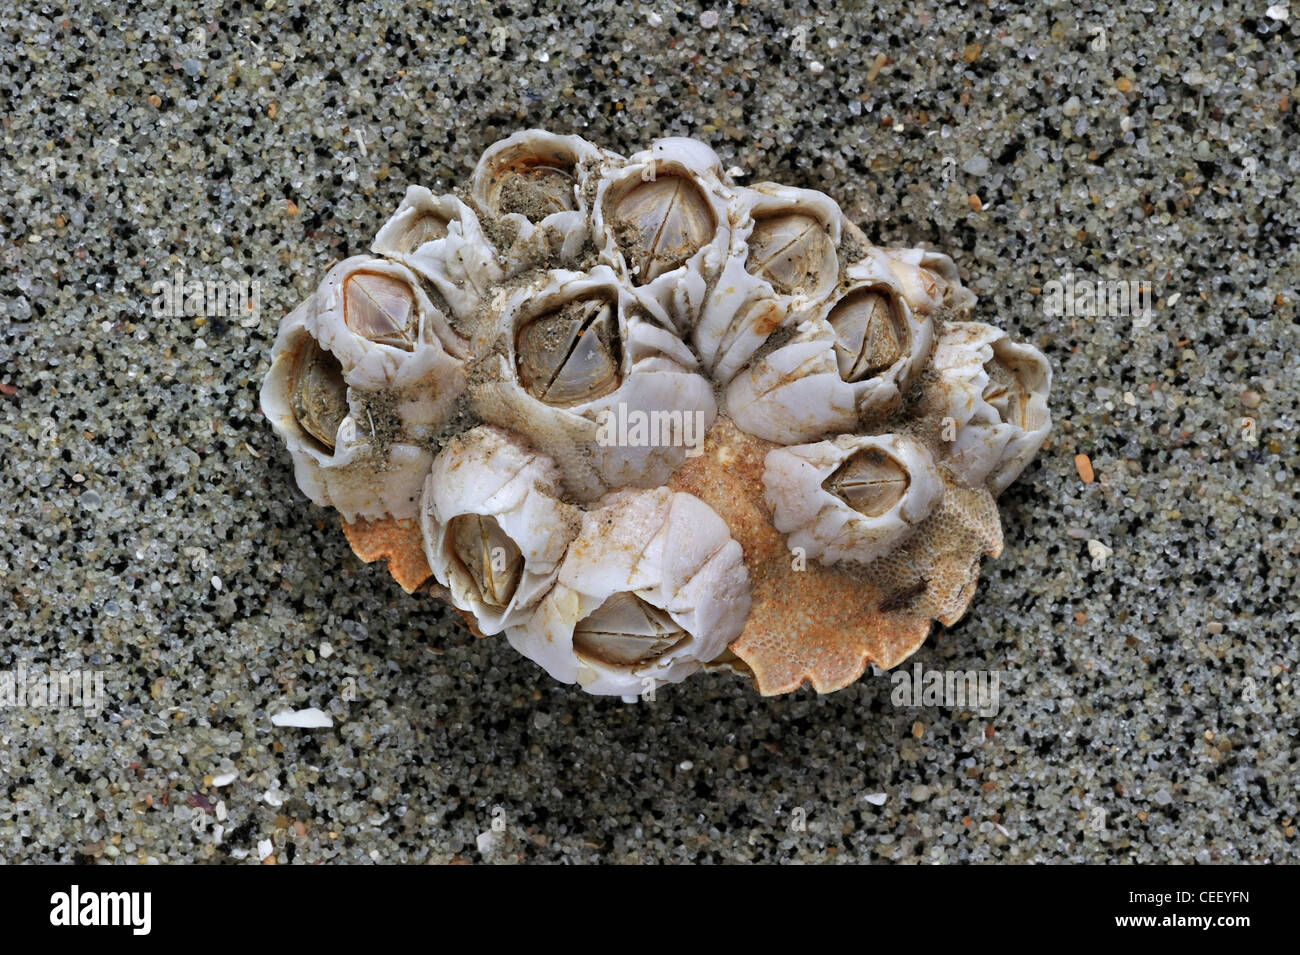 Acorn barnacles / Rock cirripedi (Semibalanus balanoides) Granchio sul guscio della lavata sulla spiaggia, Belgio Foto Stock